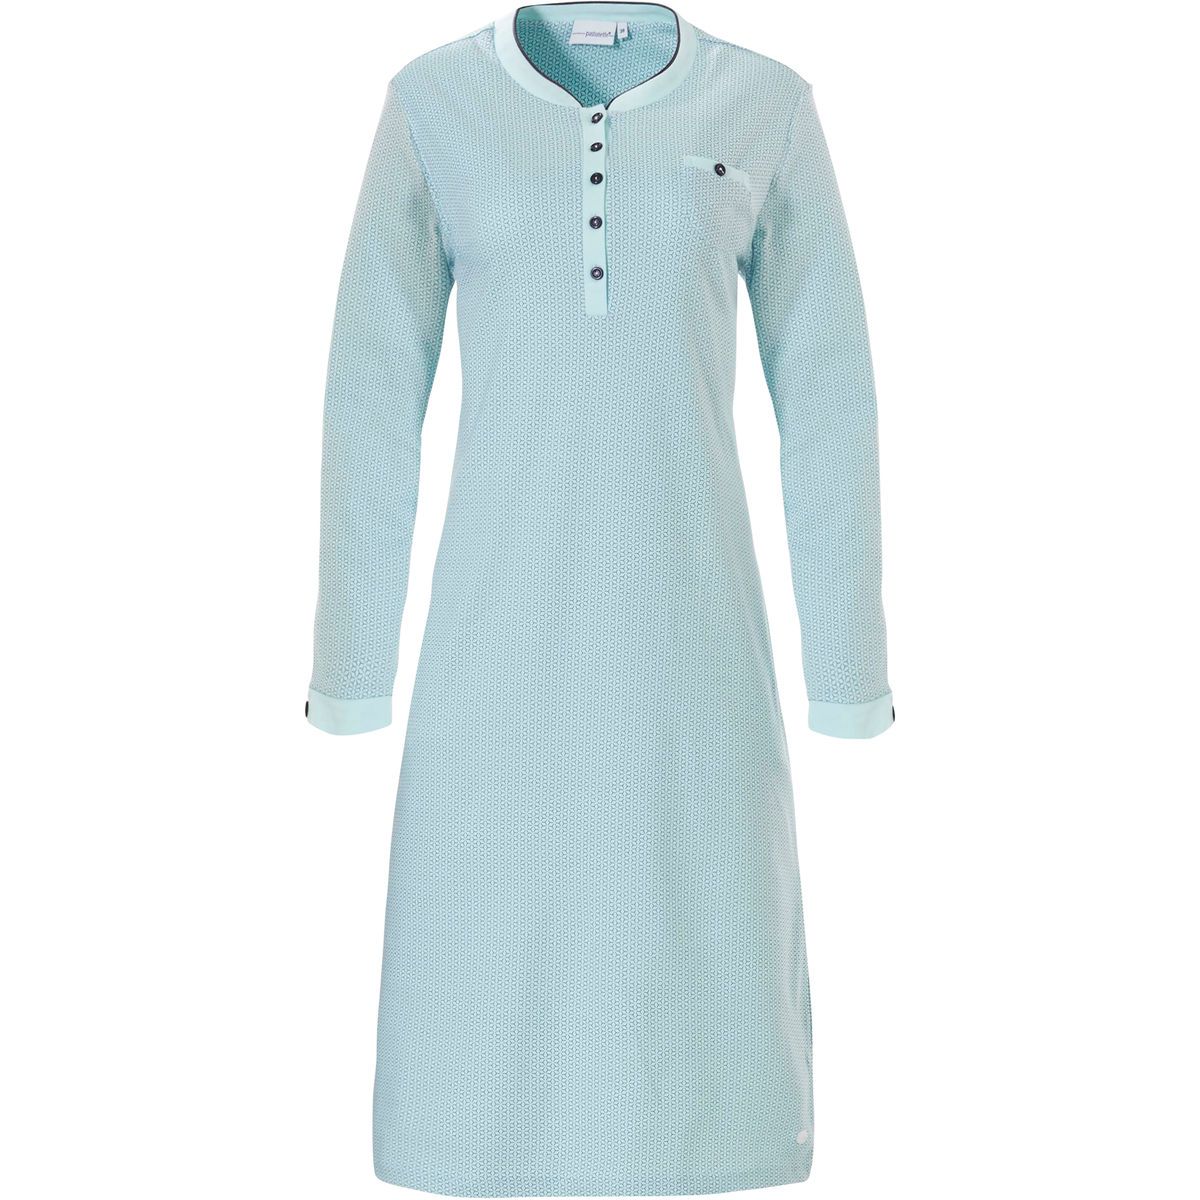 Frank herder Maaltijd Warm dames nachthemd turquoise Pastunette | Gratis verzending | Online de  mooiste pyjama's, nachthemden, ondermode en meer